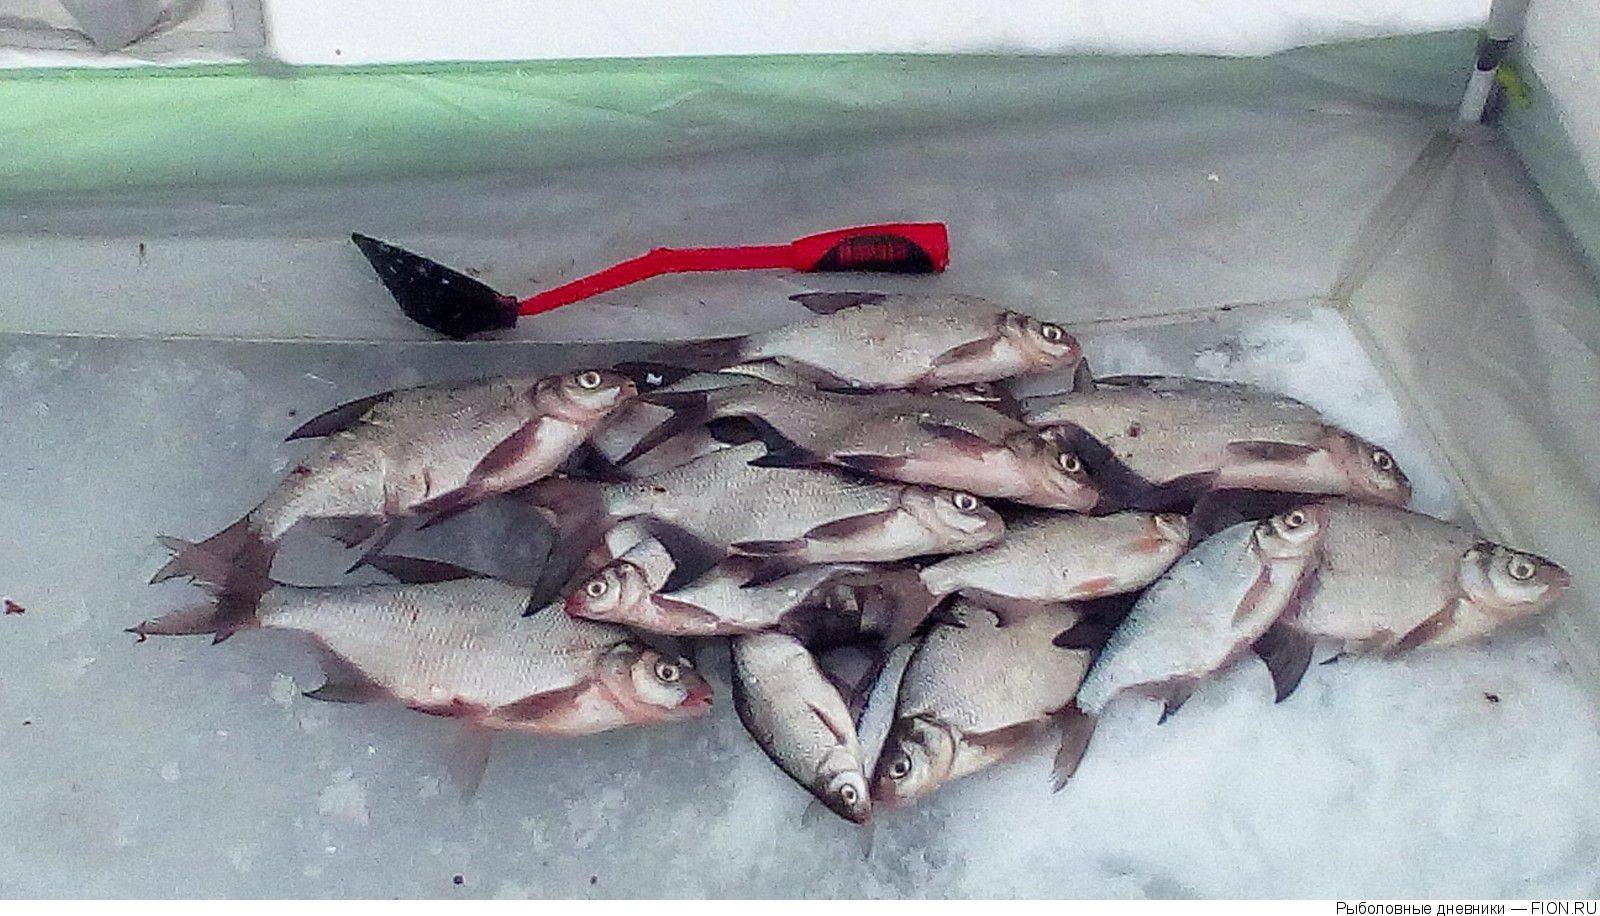 Рыбалка на рузском водохранилище - отчёты о рыбалке, обзор пойманных рыб